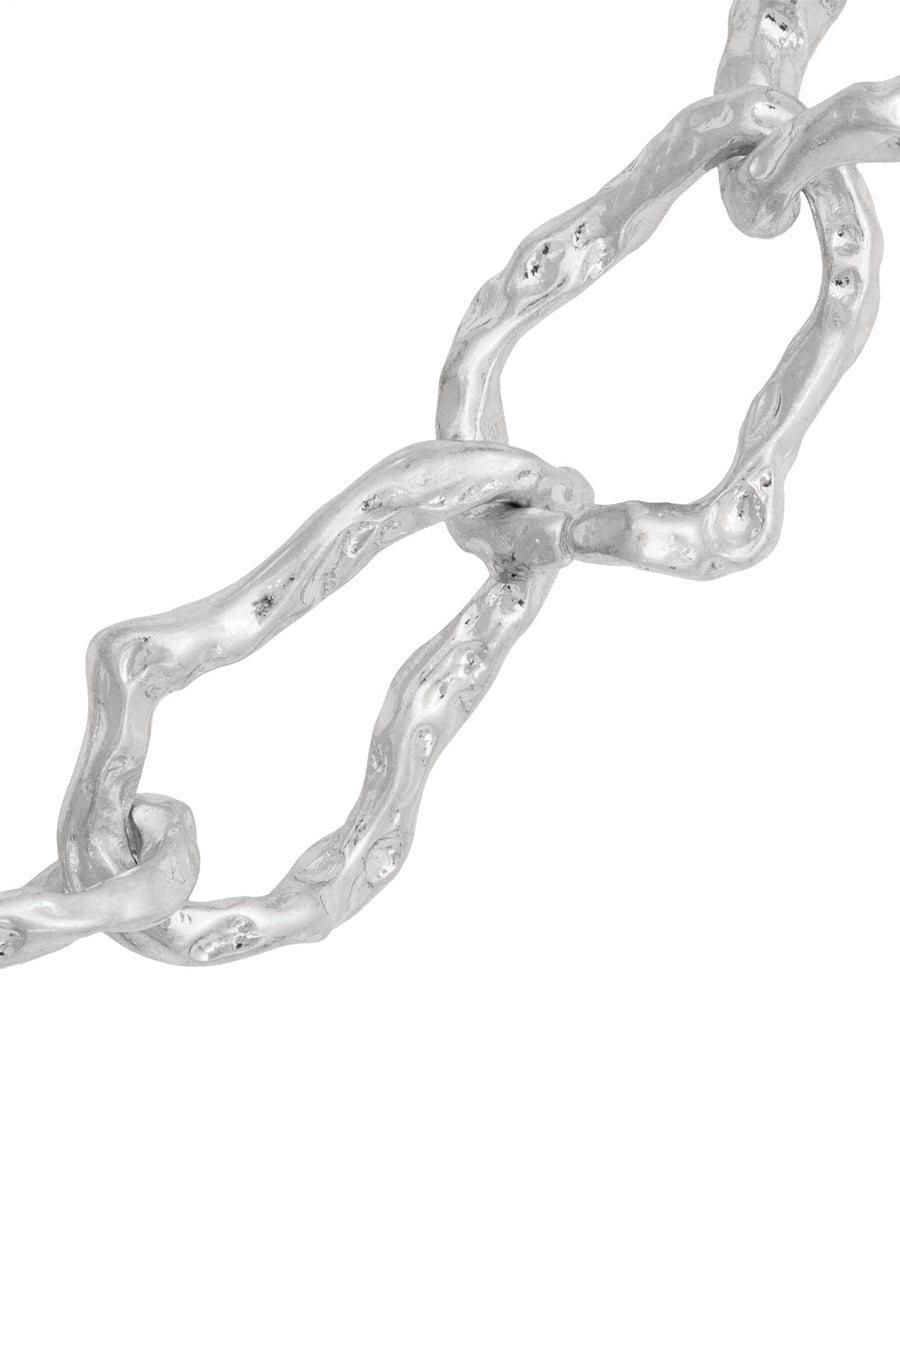 Silver Ritzy Necklace